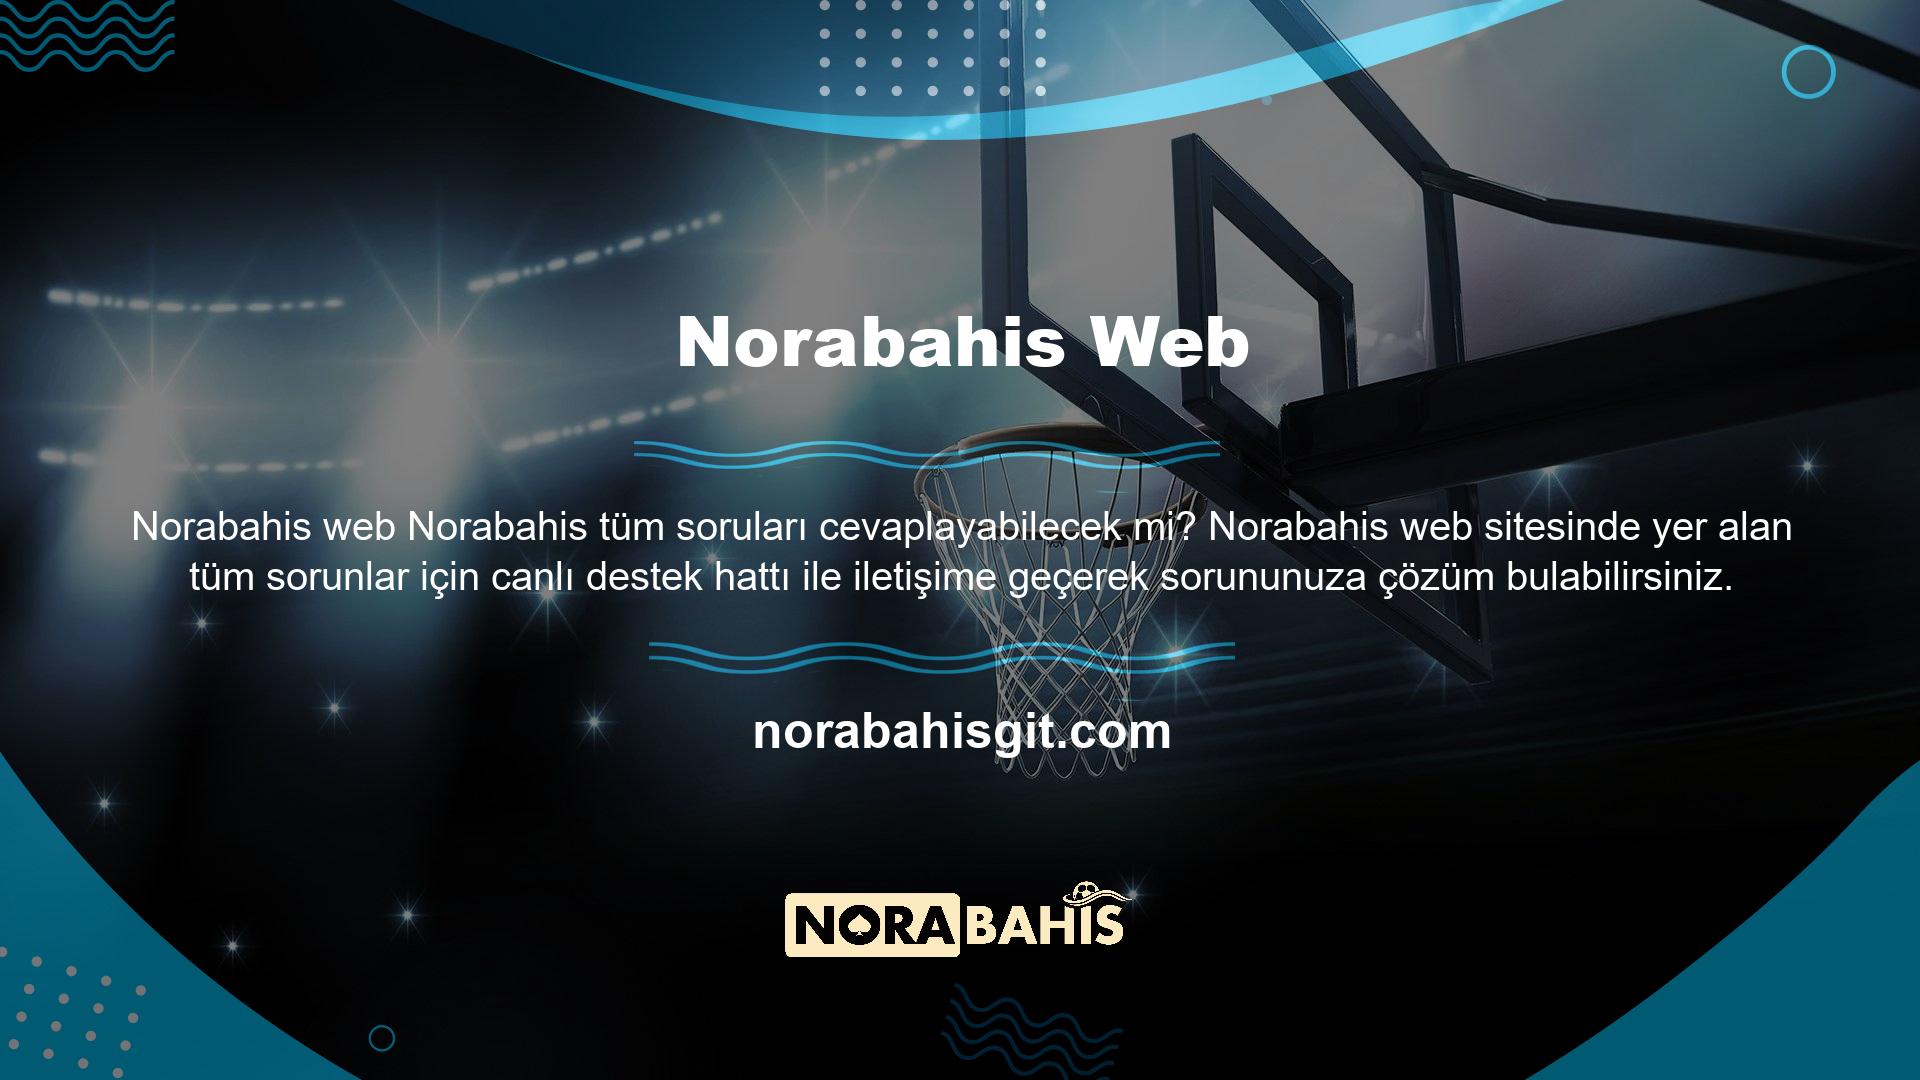 Norabahis casino bahis sitesindeki hesabınızın şifresini değiştirmek isterseniz, lütfen Norabahis web sitesindeki canlı destek hattı ile iletişime geçin